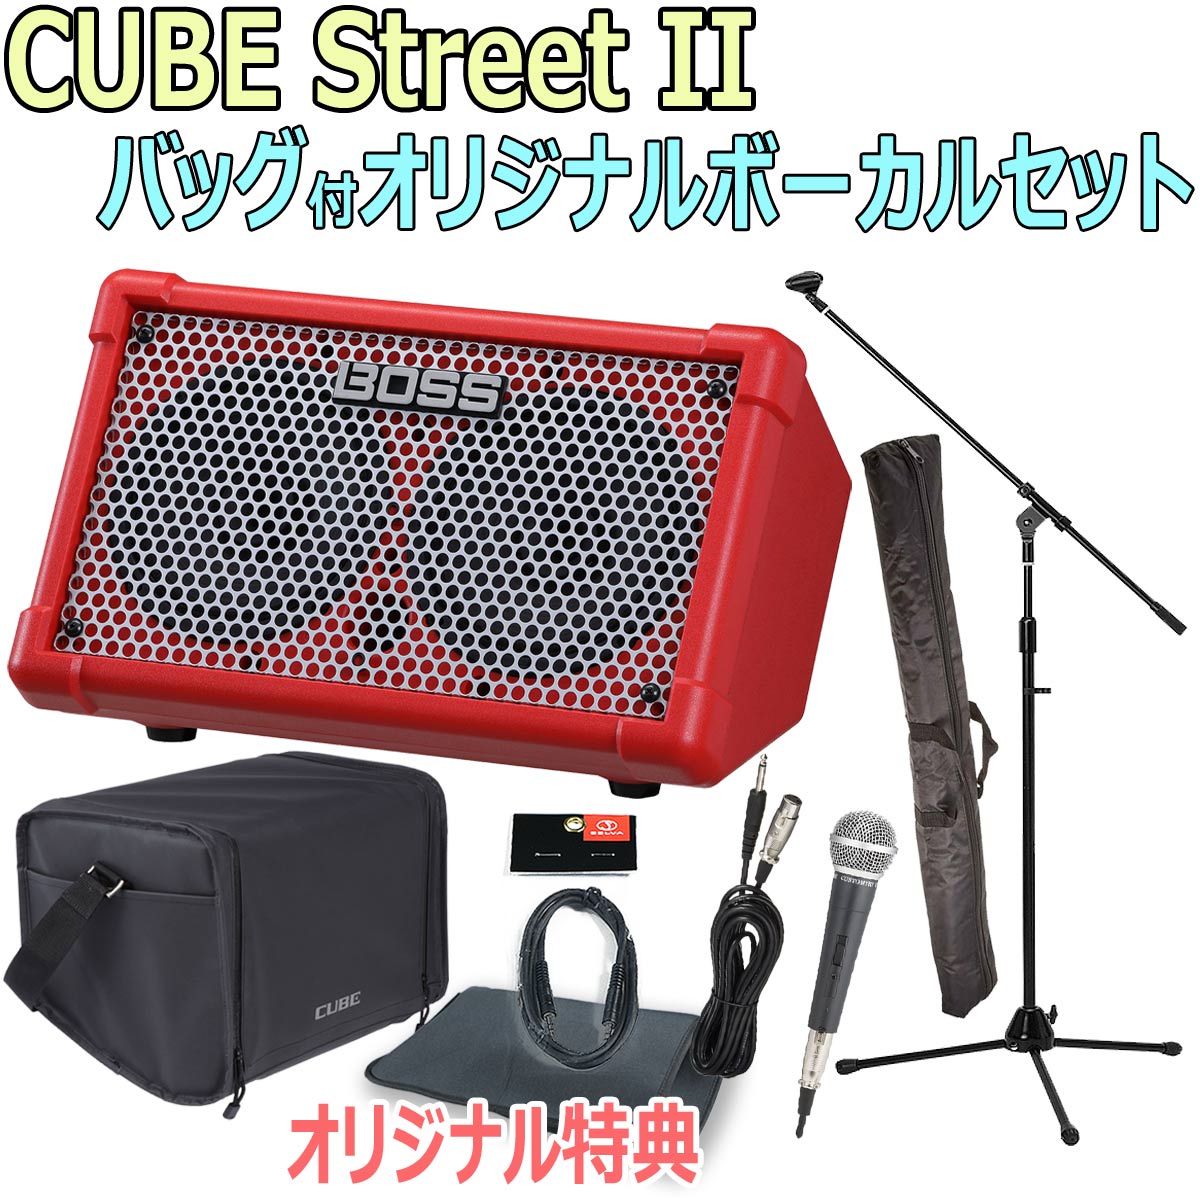 【あす楽対象商品】BOSS / CUBE Street II Red -純正バッグ付オリジナルボーカルセット-【限定特典：スリーブバッグ AUXミニケーブル】【YRK】